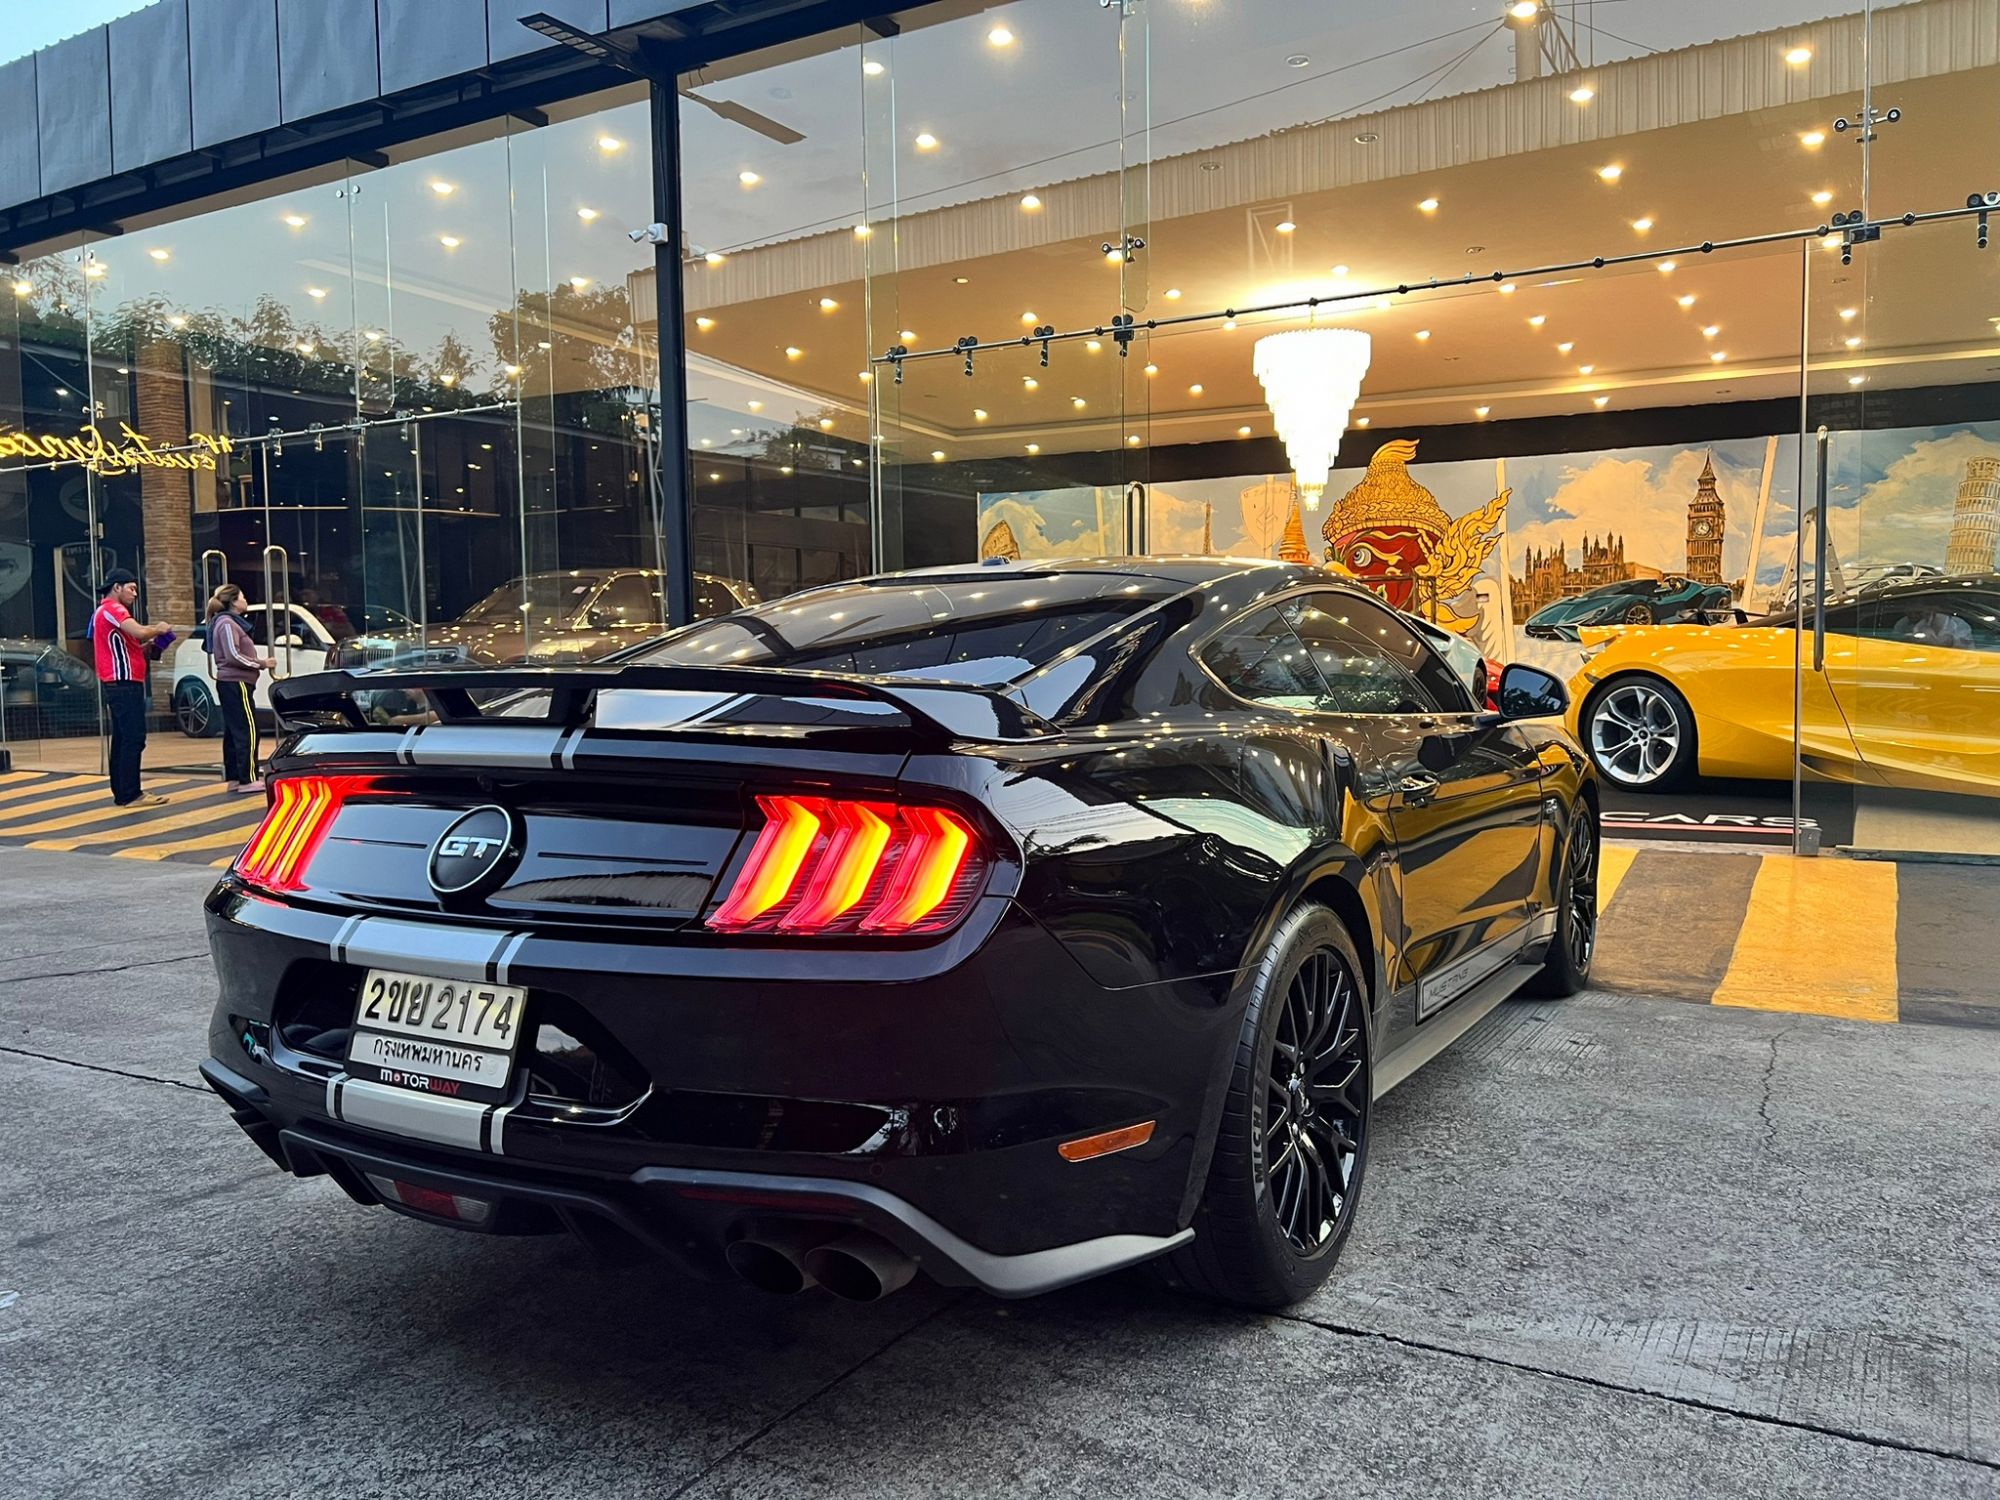 2020 Ford Mustang à¸ªà¸µà¸”à¸³